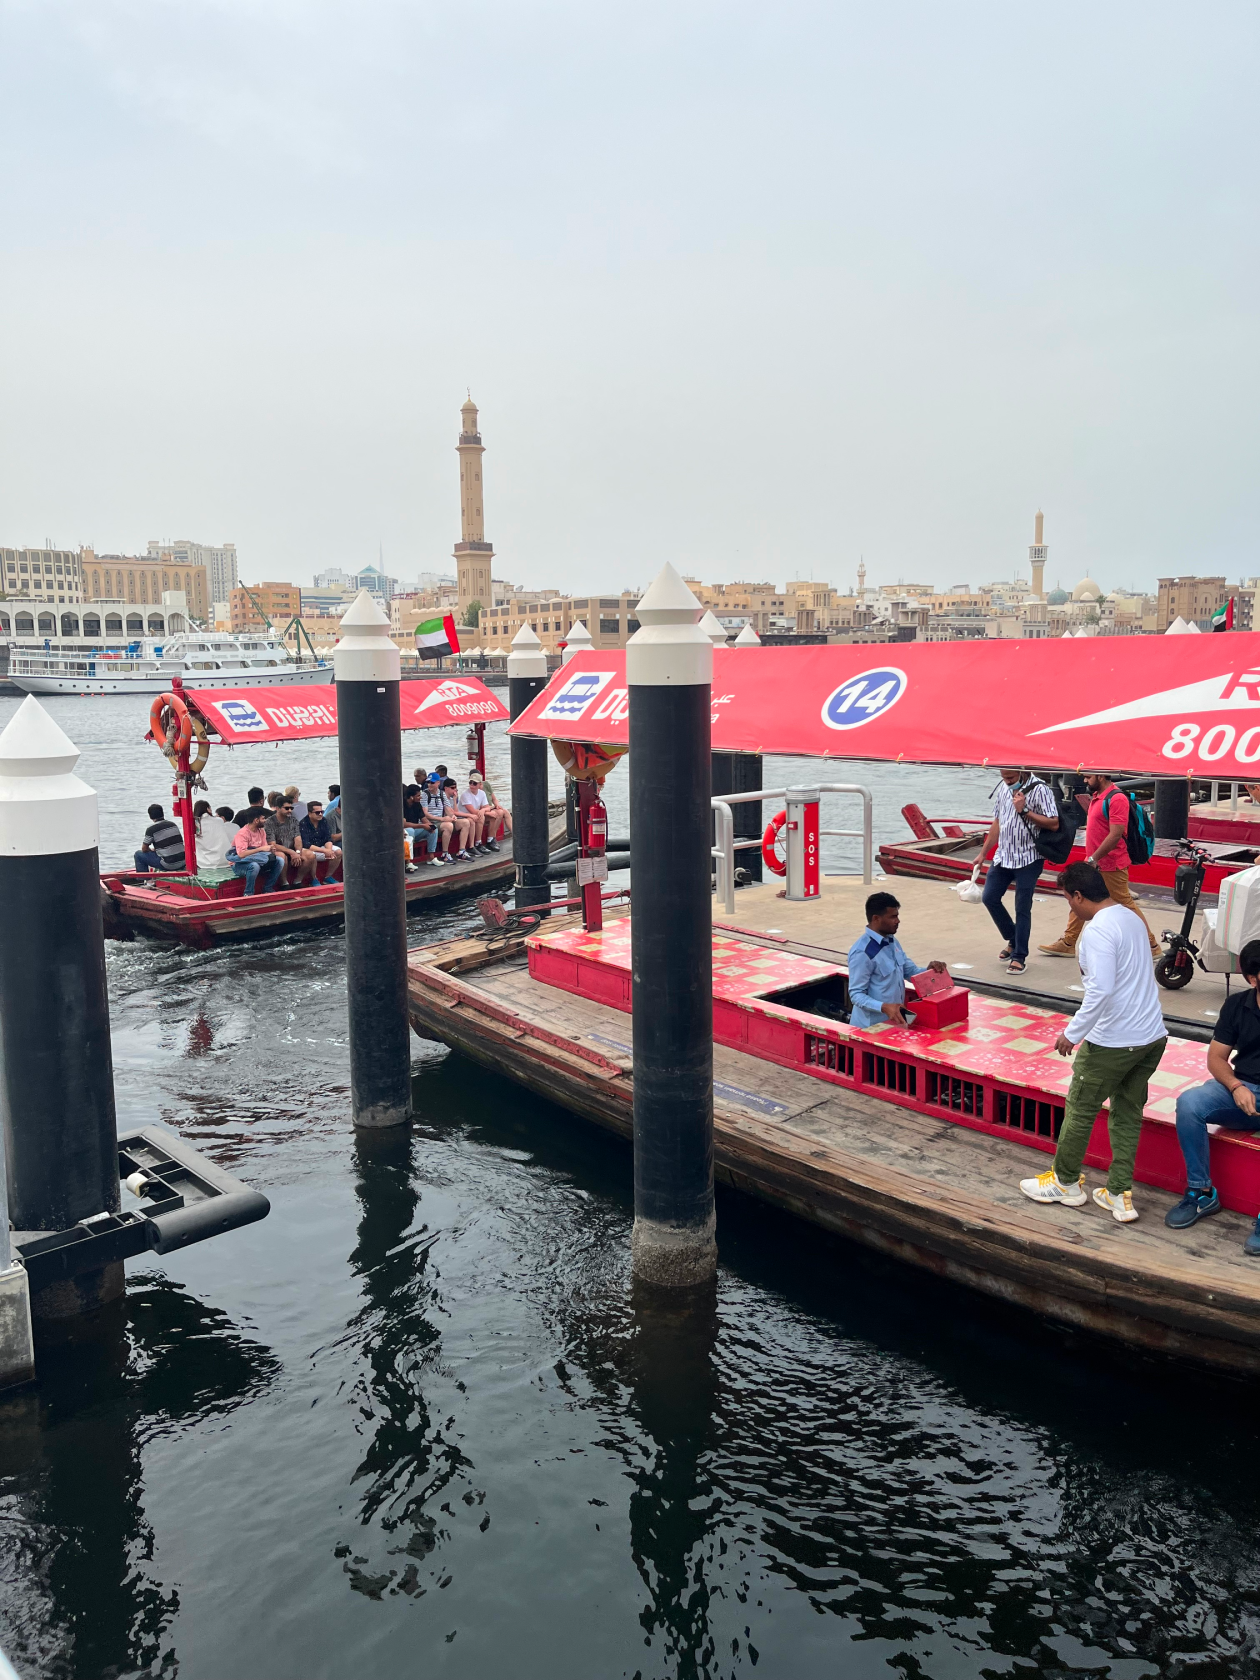 Один из видов водного транспорт Дубая является абра. Это традиционная арабская лодка с небольшим выступом, чтобы сесть. По сути эта лодка представляет собой плавающую табуретку